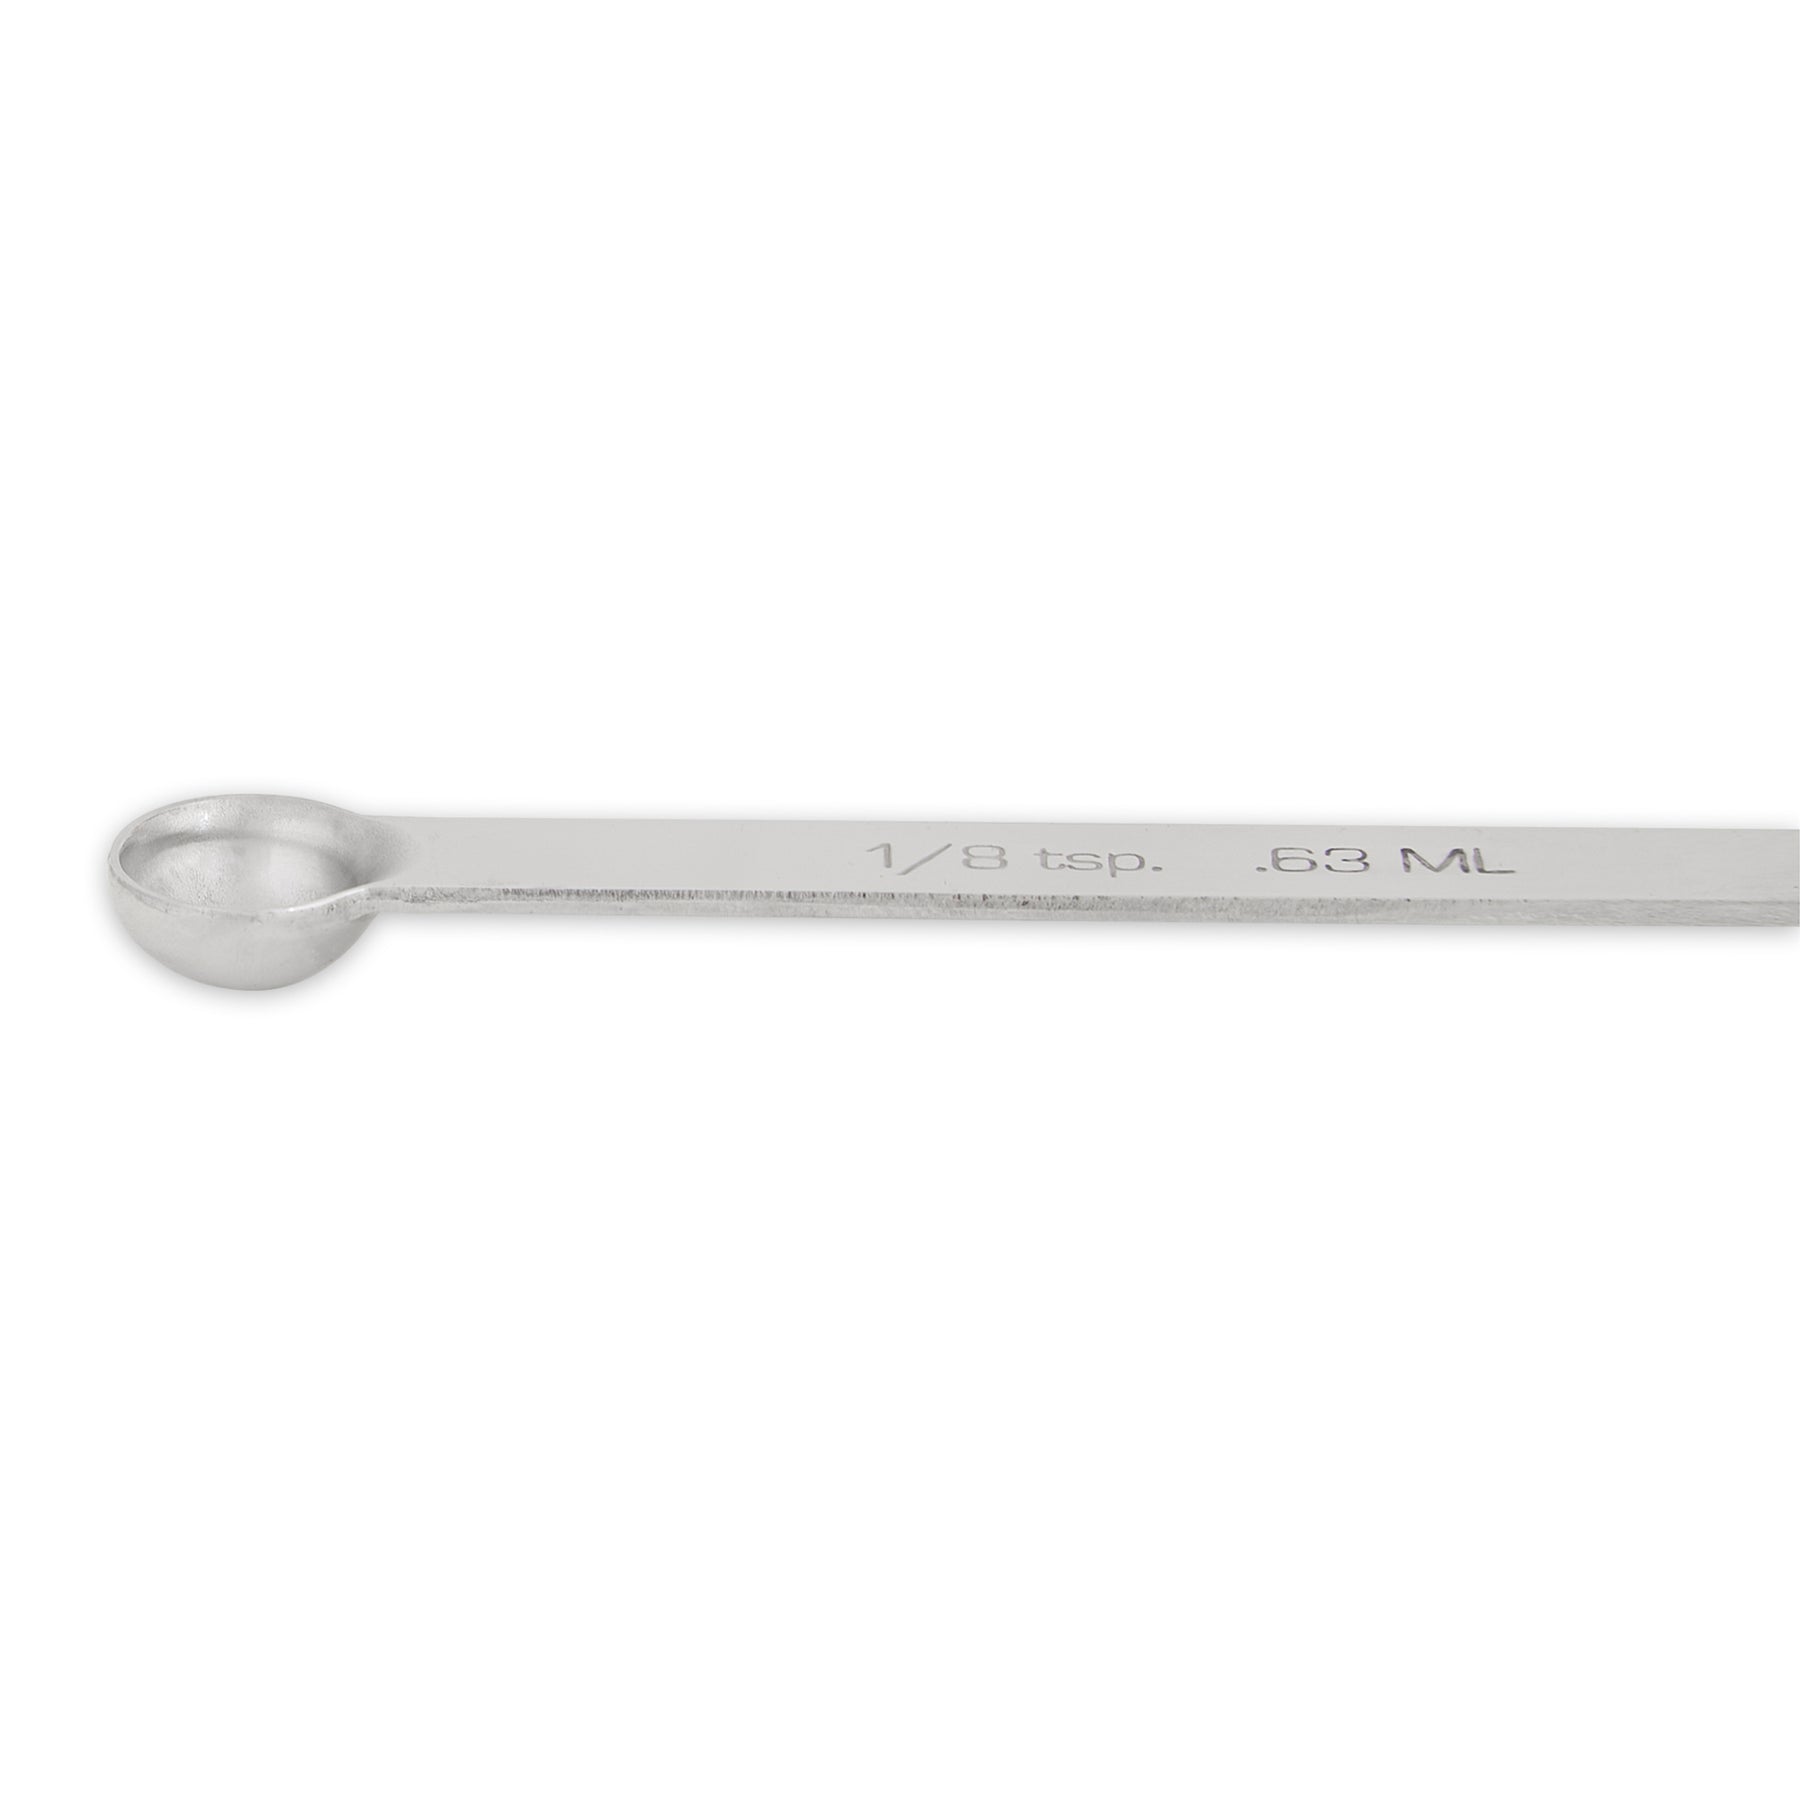 RSVP 1/8 Teaspoon Measuring Spoons